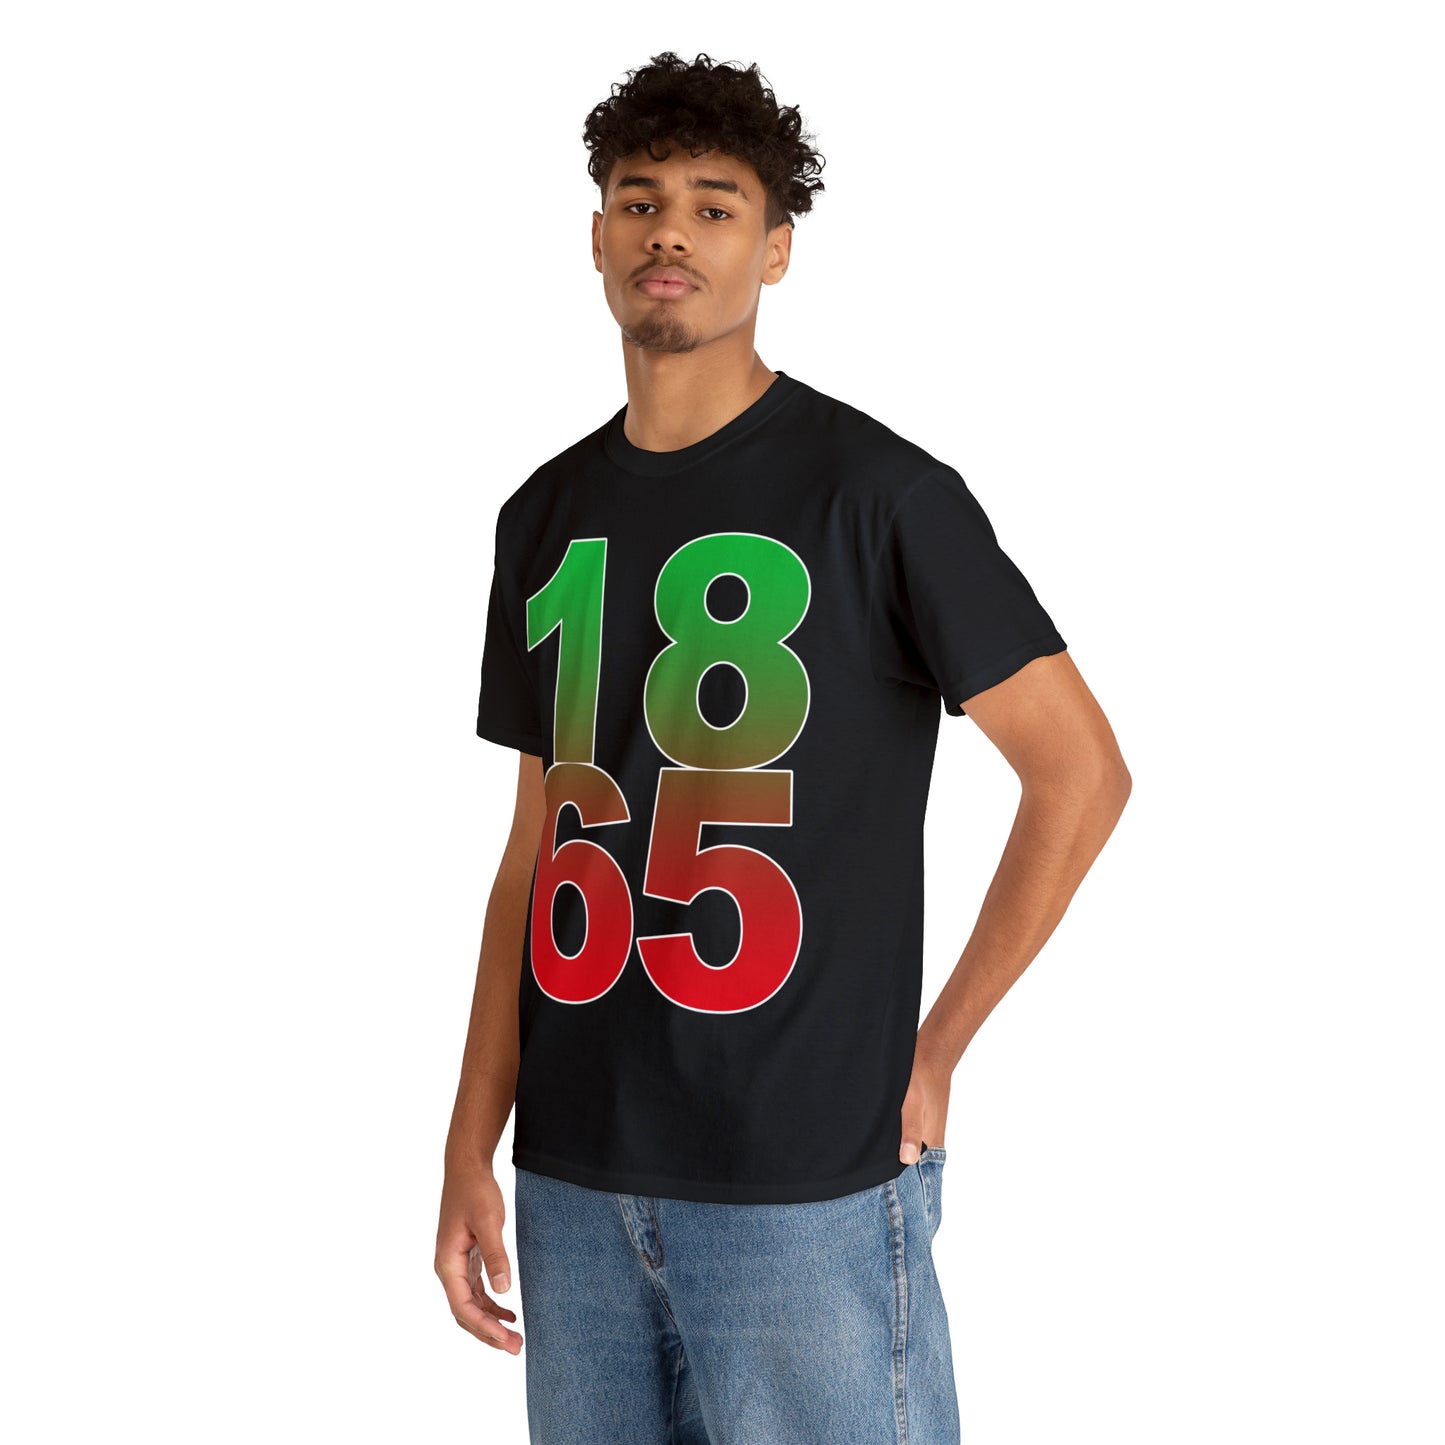 1865 Shirt - Up to 5X